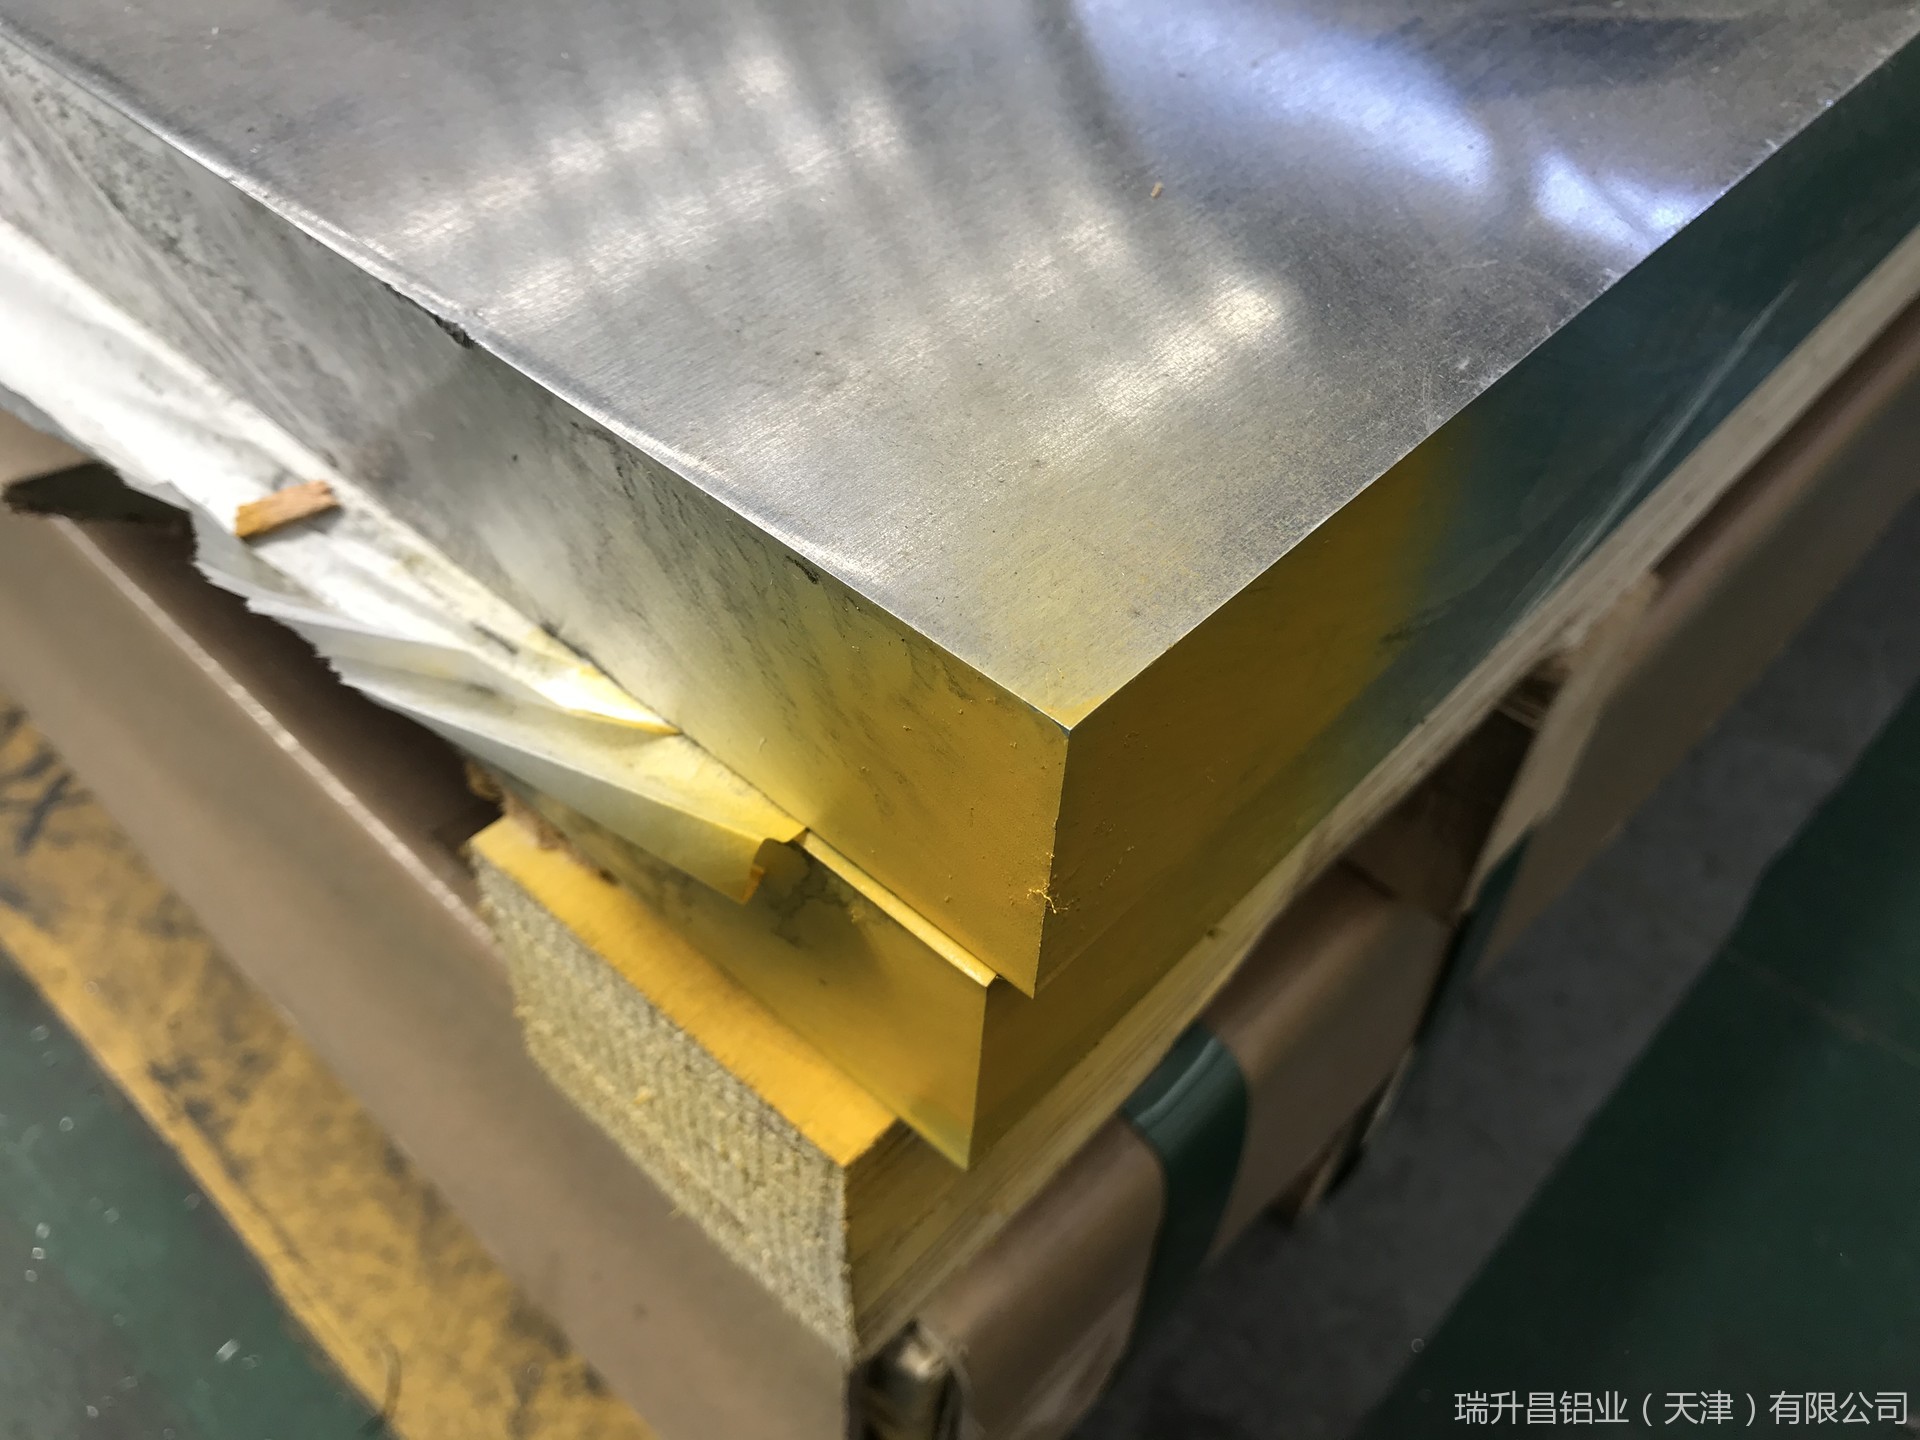 天津瑞升昌铝业供应5052合金铝板 5052铝板价格厂家 *5052h22铝板 防锈铝板批发示例图14